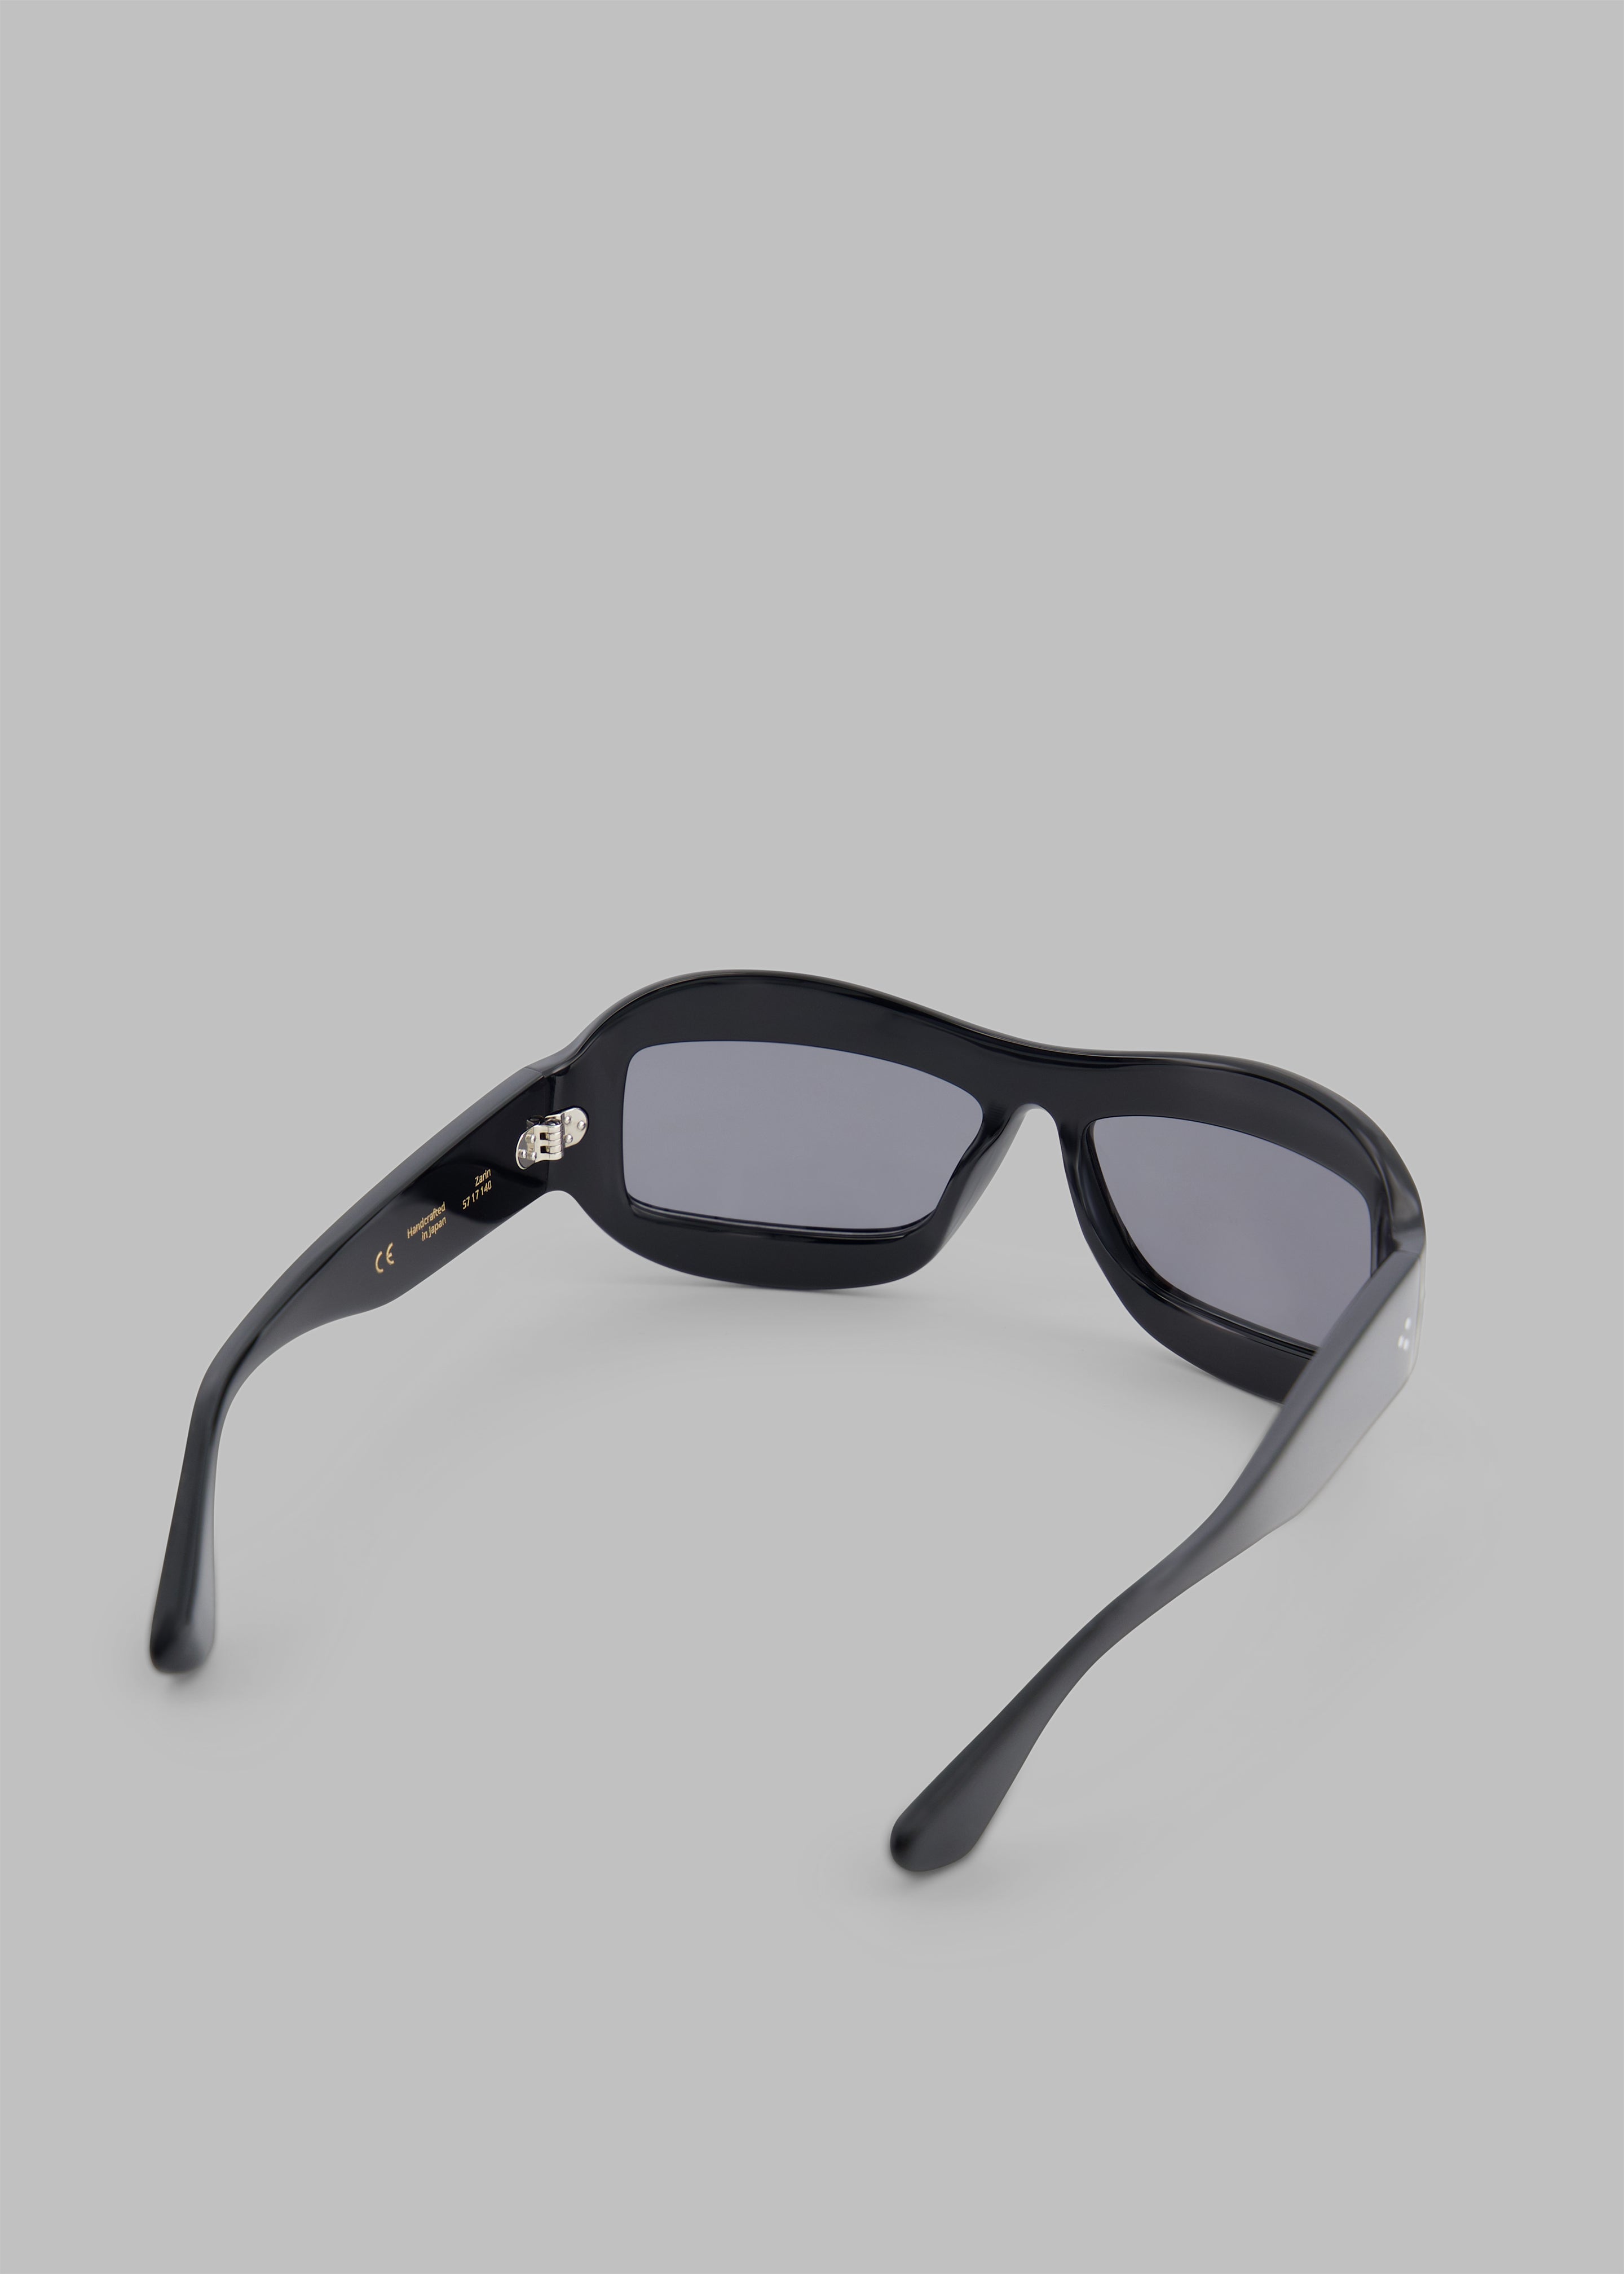 Port Tanger Zarin Sunglasses - Black Acetate/Black Lens - 11